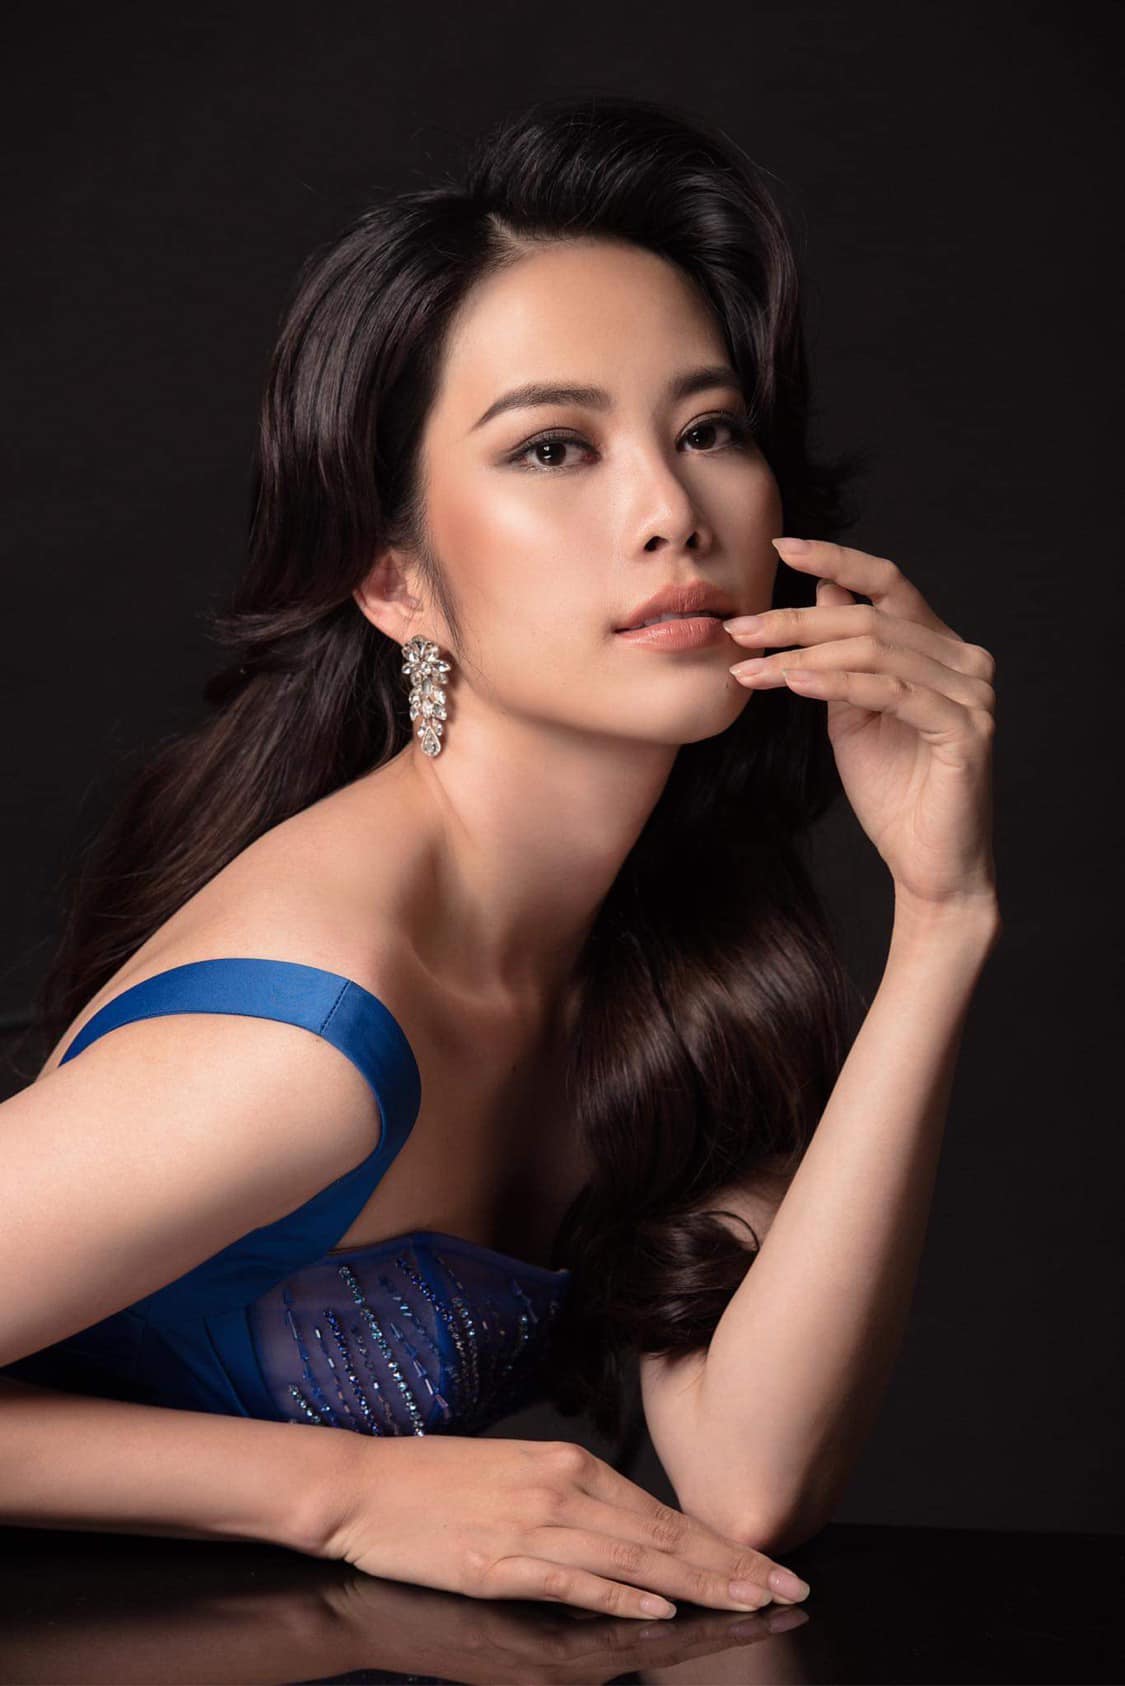 Nhiều netizen đã gửi lời thăm hỏi, chúc người đẹp sinh năm 1996 sẽ sớm khoẻ lại để hoàn thành tốt những phần thi sắp tới tại Miss World Vietnam 2022. 